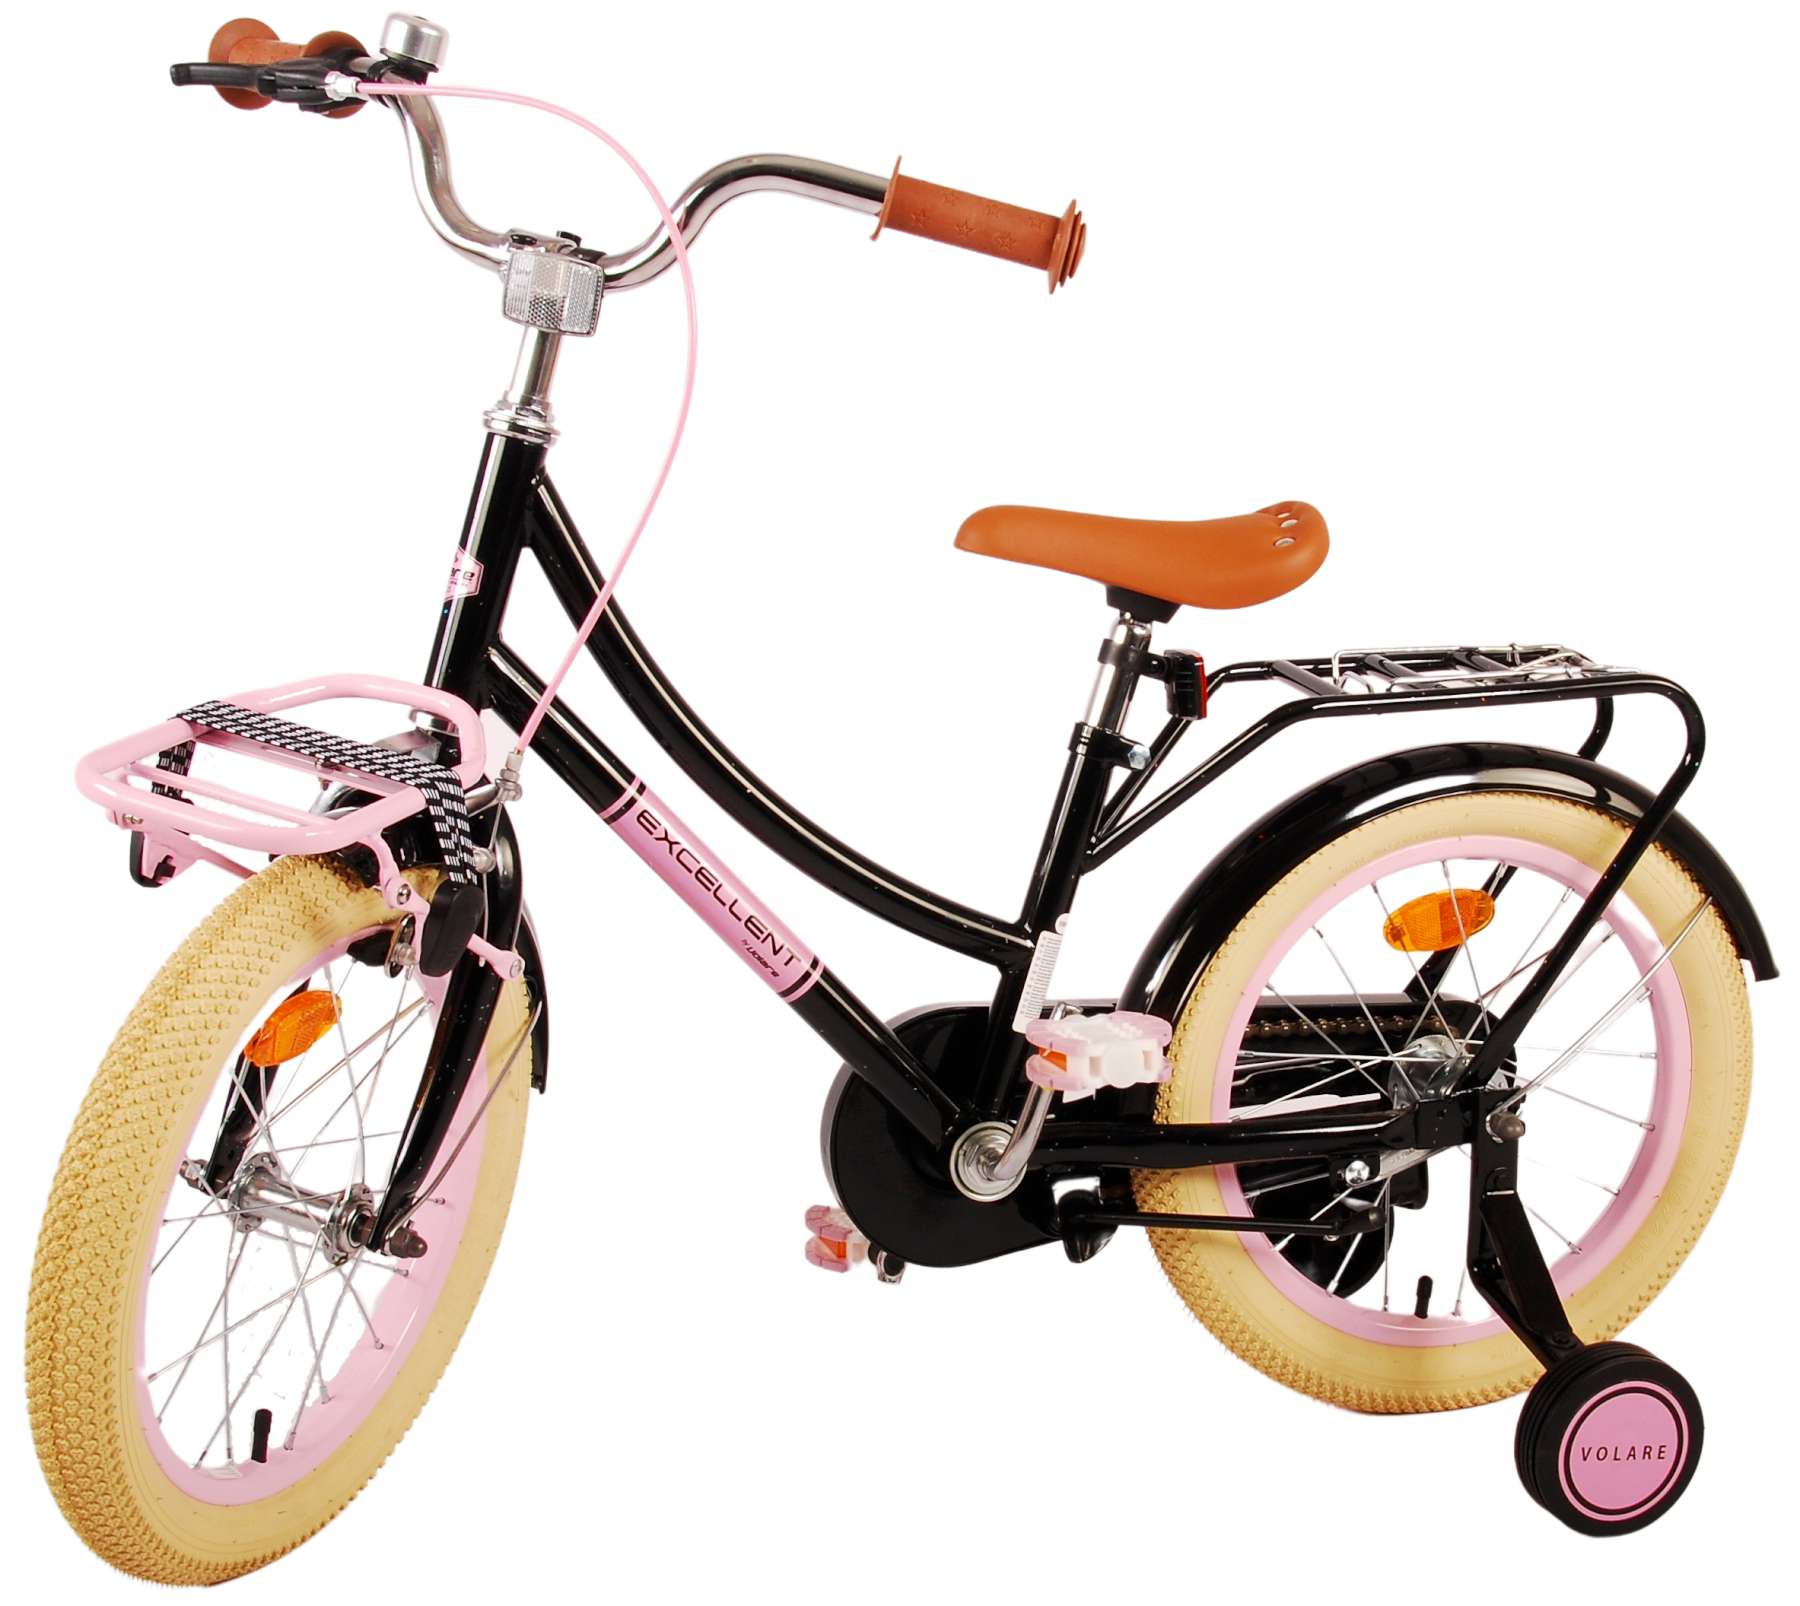 Vélos filles :: Vélos filles 16 po :: Vélo d'enfant Volare Lovely - Filles  - 16 pouces - Rouge Blanc - Deux freins à main - Vélos pour enfants -  Garantie des prix les plus bas - Livraison gratuite